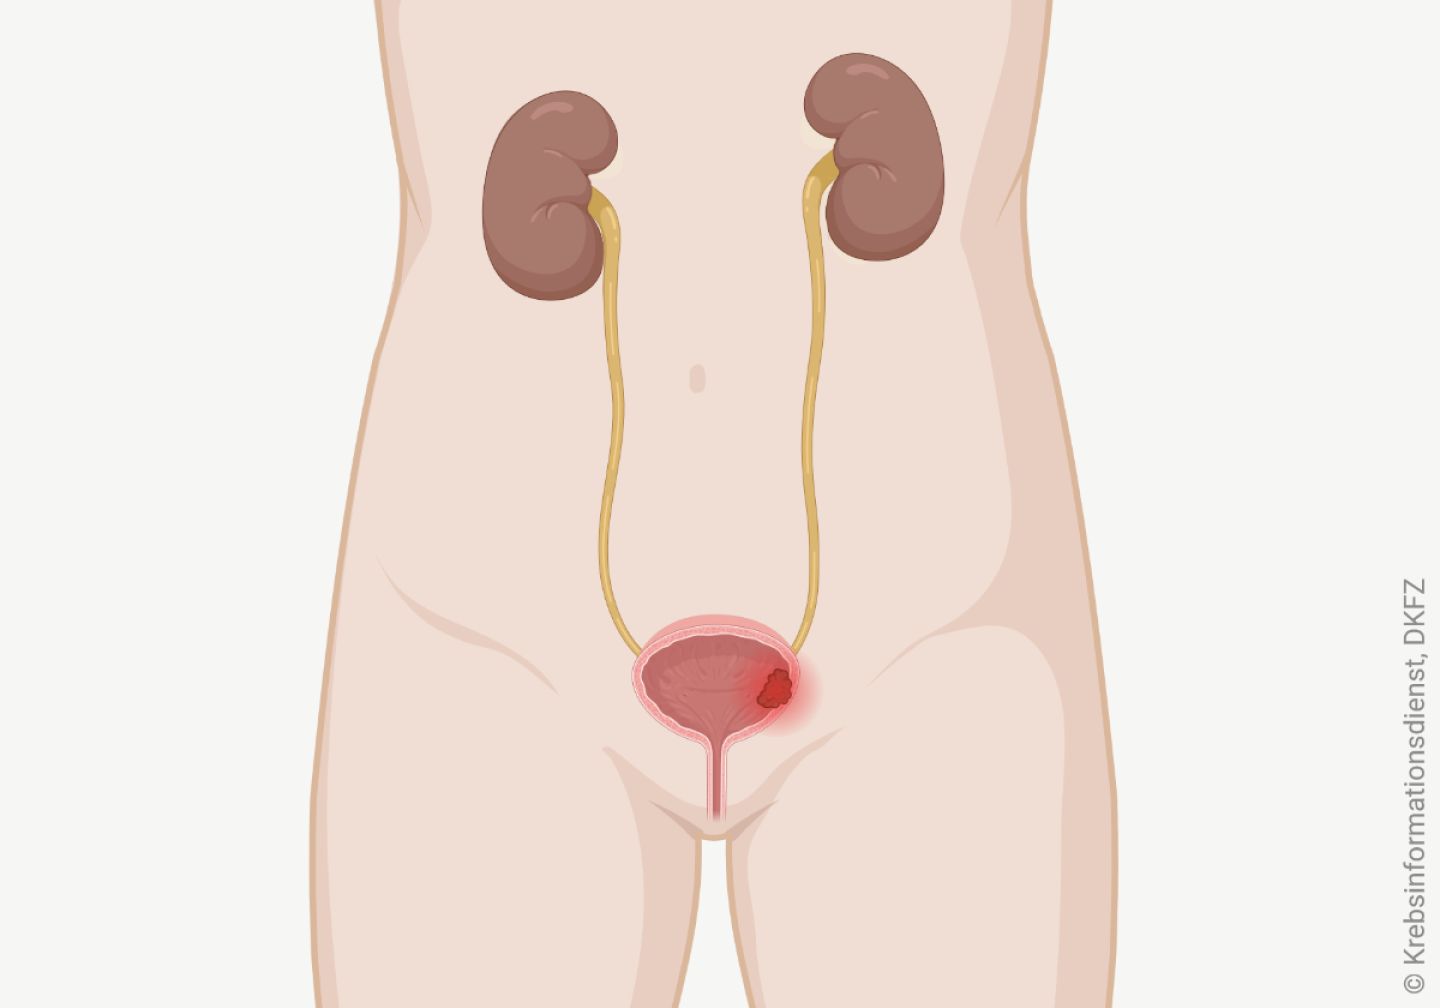 Schematische Darstellung der ableitenden Harnwege mit Nieren, Harnleiter, Harnblase und Harnröhre